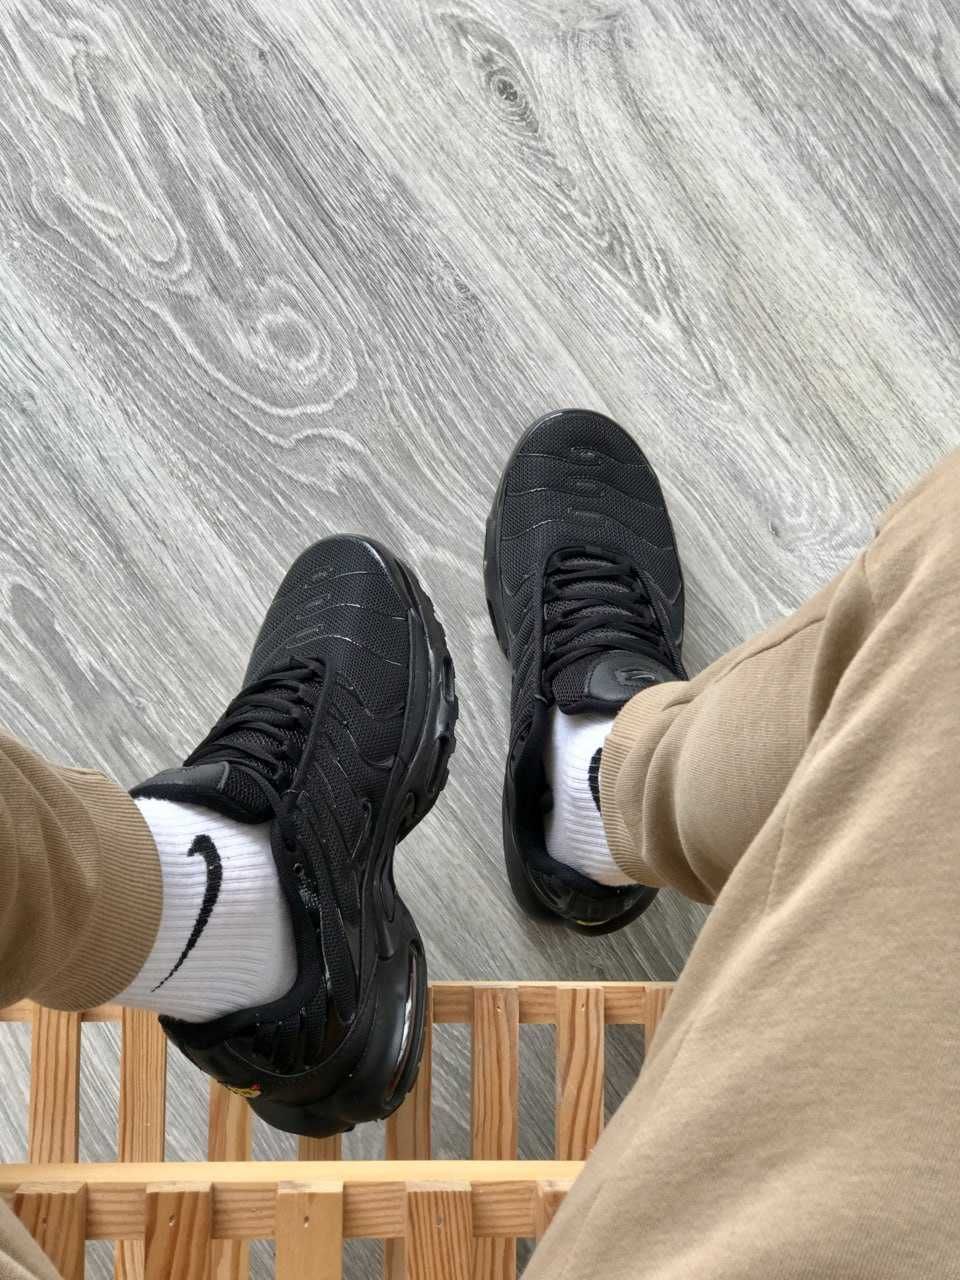 Кросівки чоловічі шкіряні Nike Tn + black / красовки Найк Тн + чорні